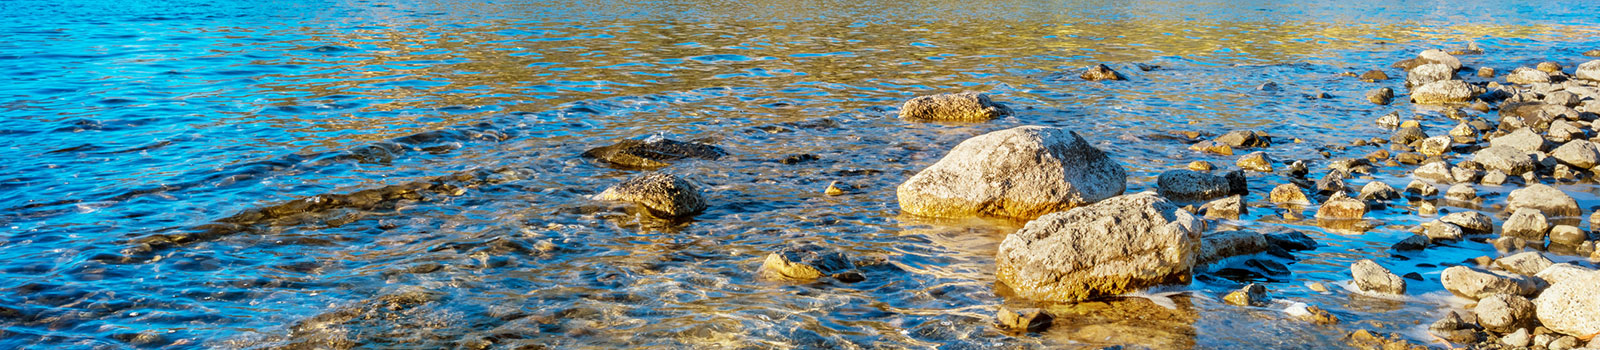 Rocks in Wallowa Lake in Joseph, OR.